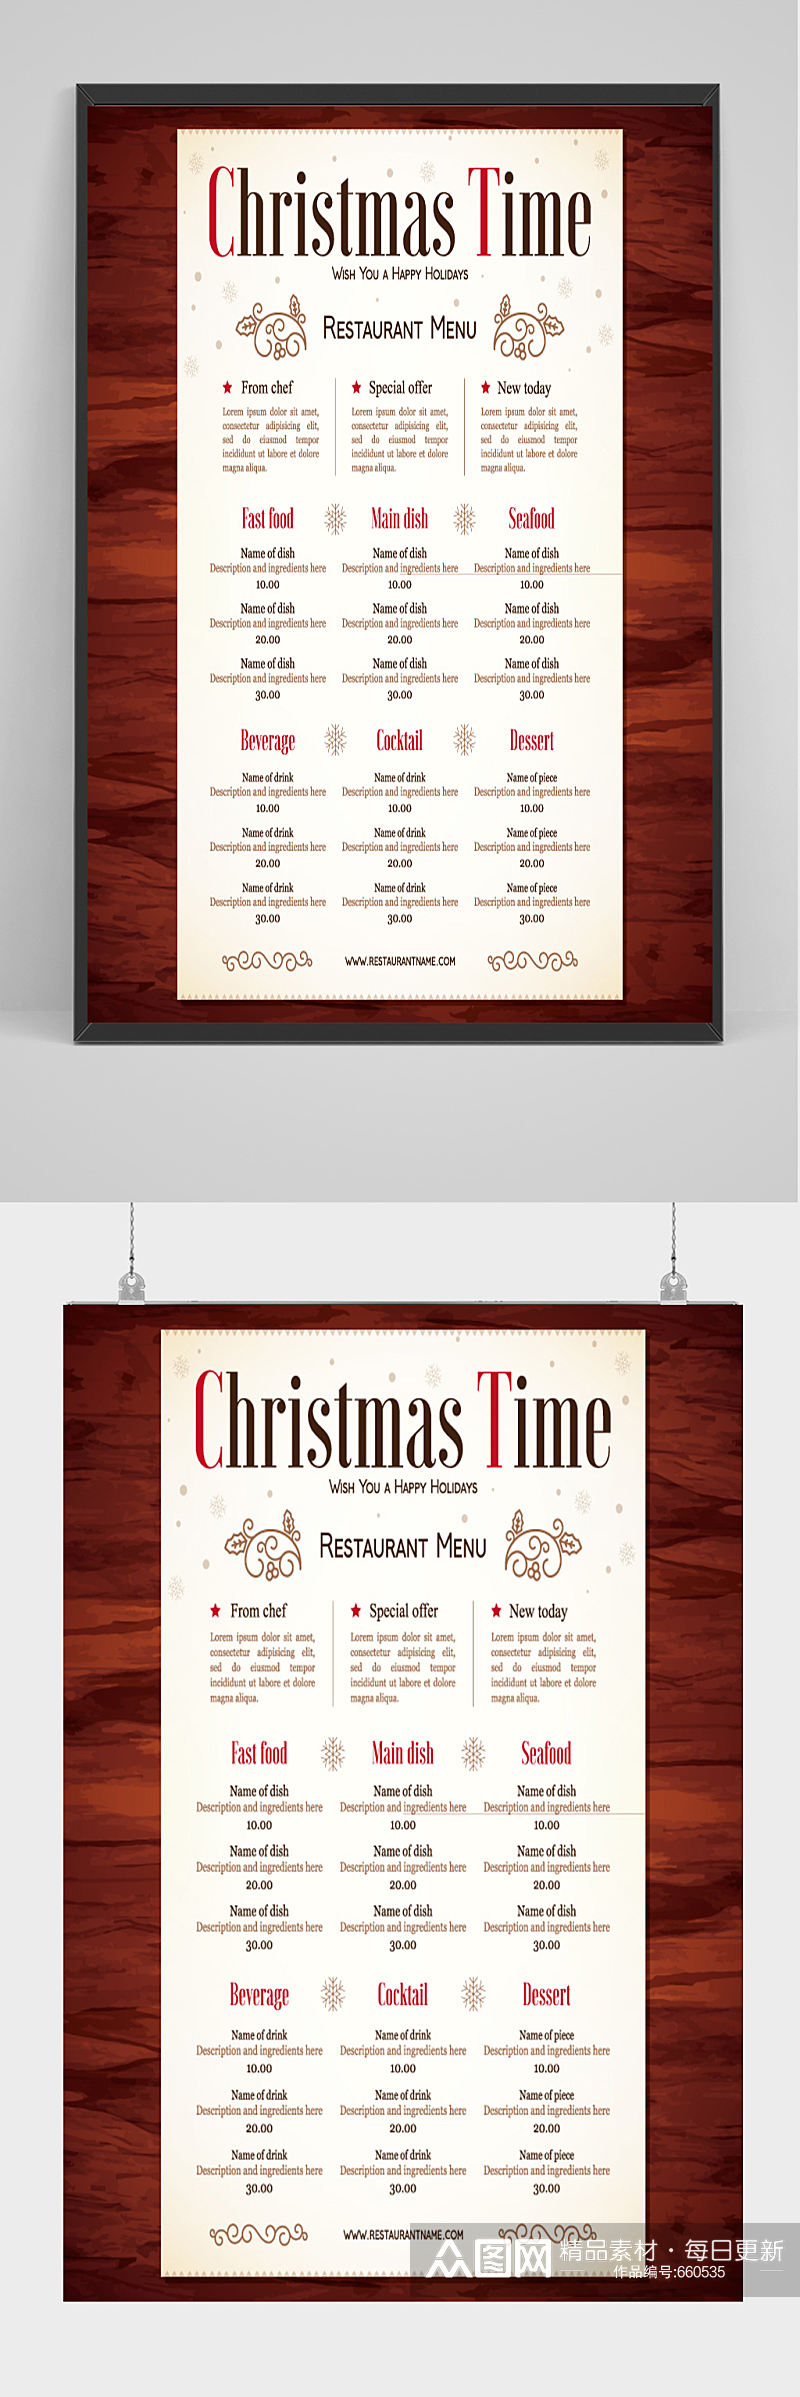 创意圣诞节餐厅菜单矢量图素材